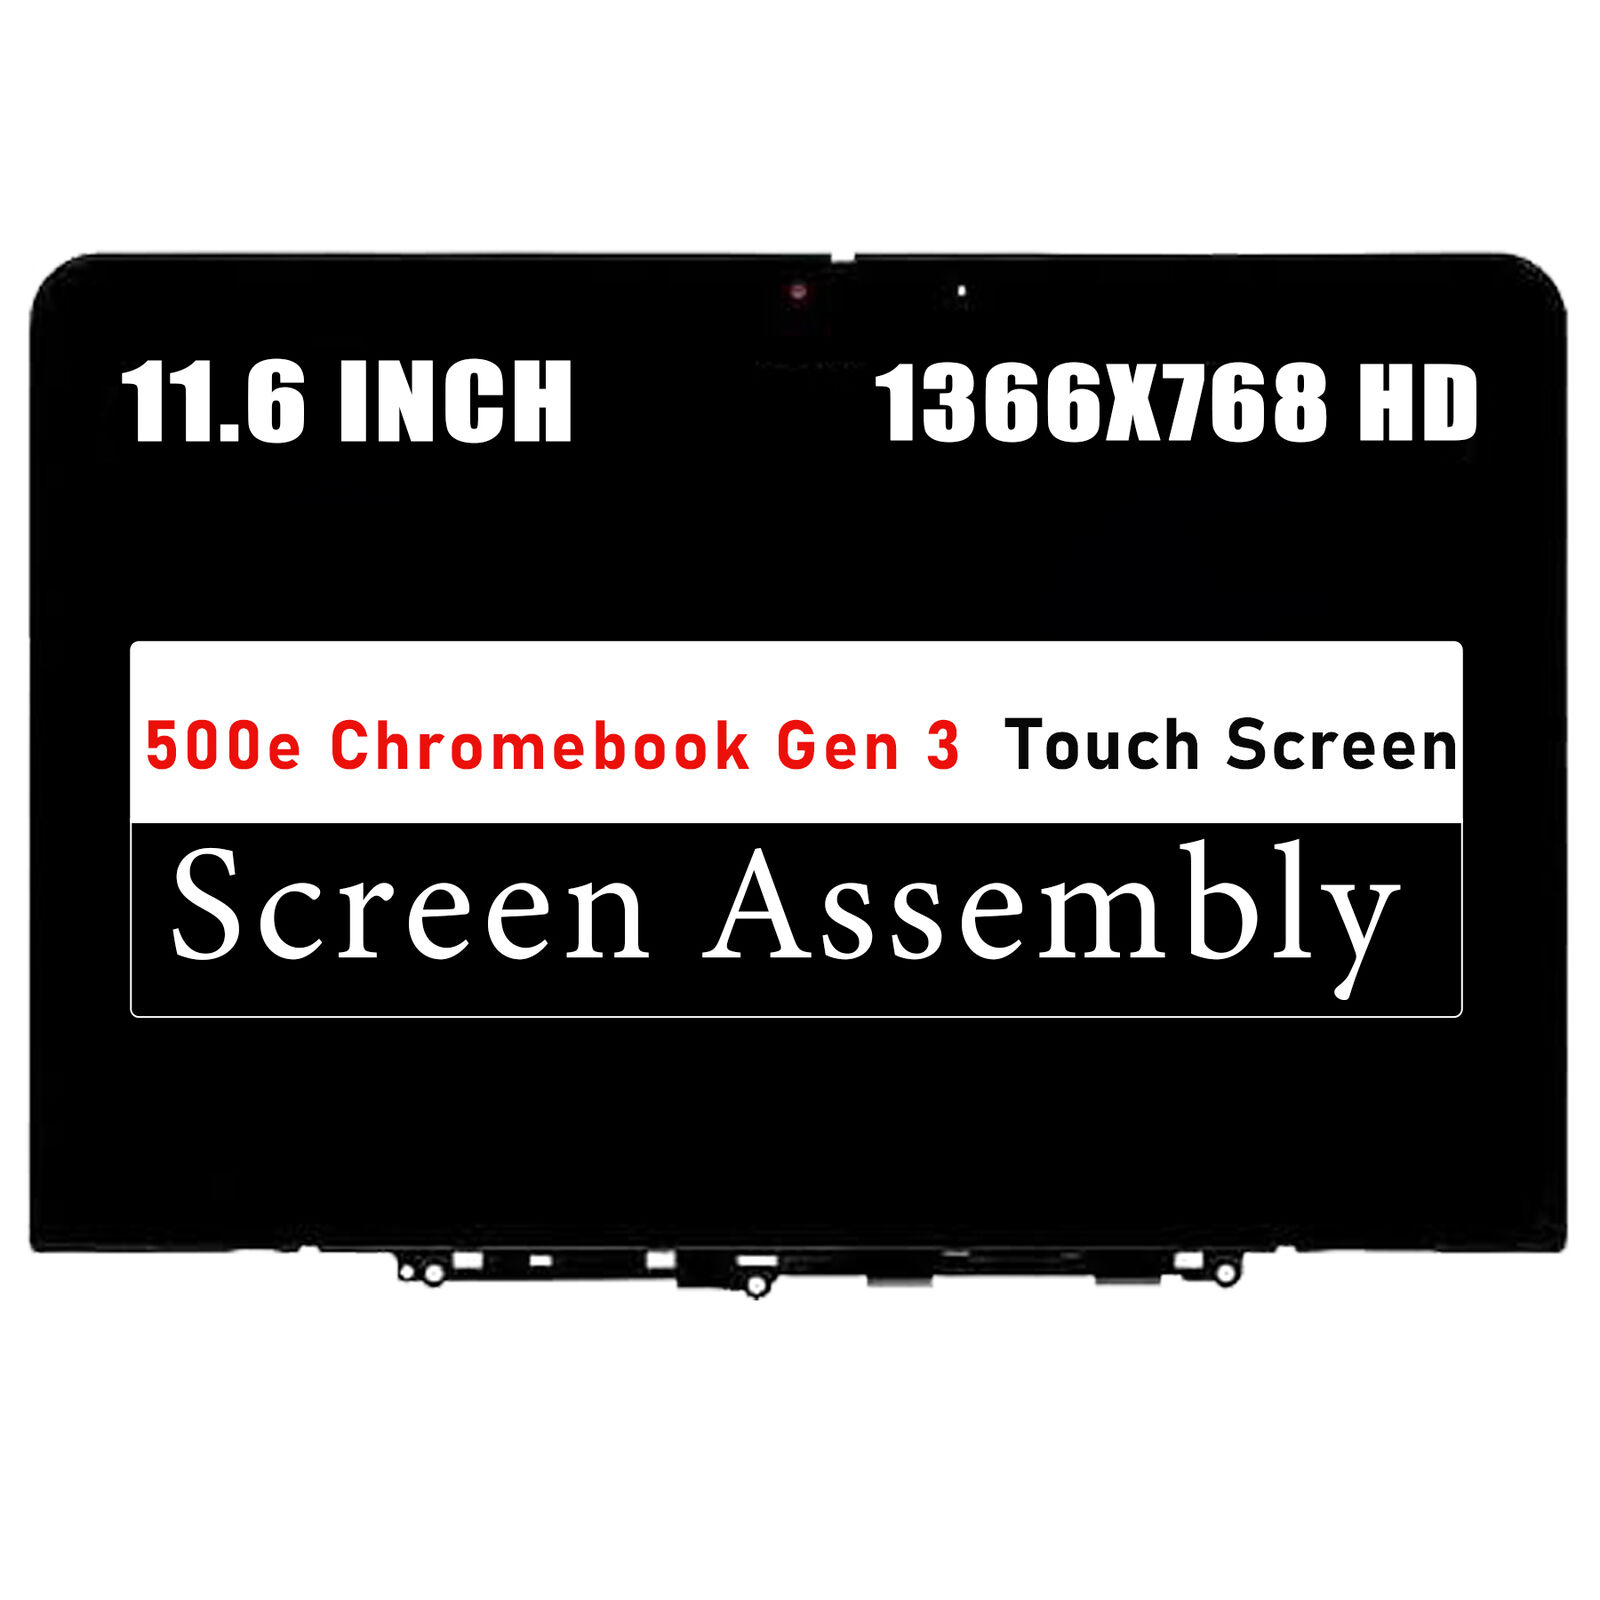 LCD Touch Screen Assembly for Lenovo 500e Chromebook Gen 3 82JB 82JC 82JB0000US